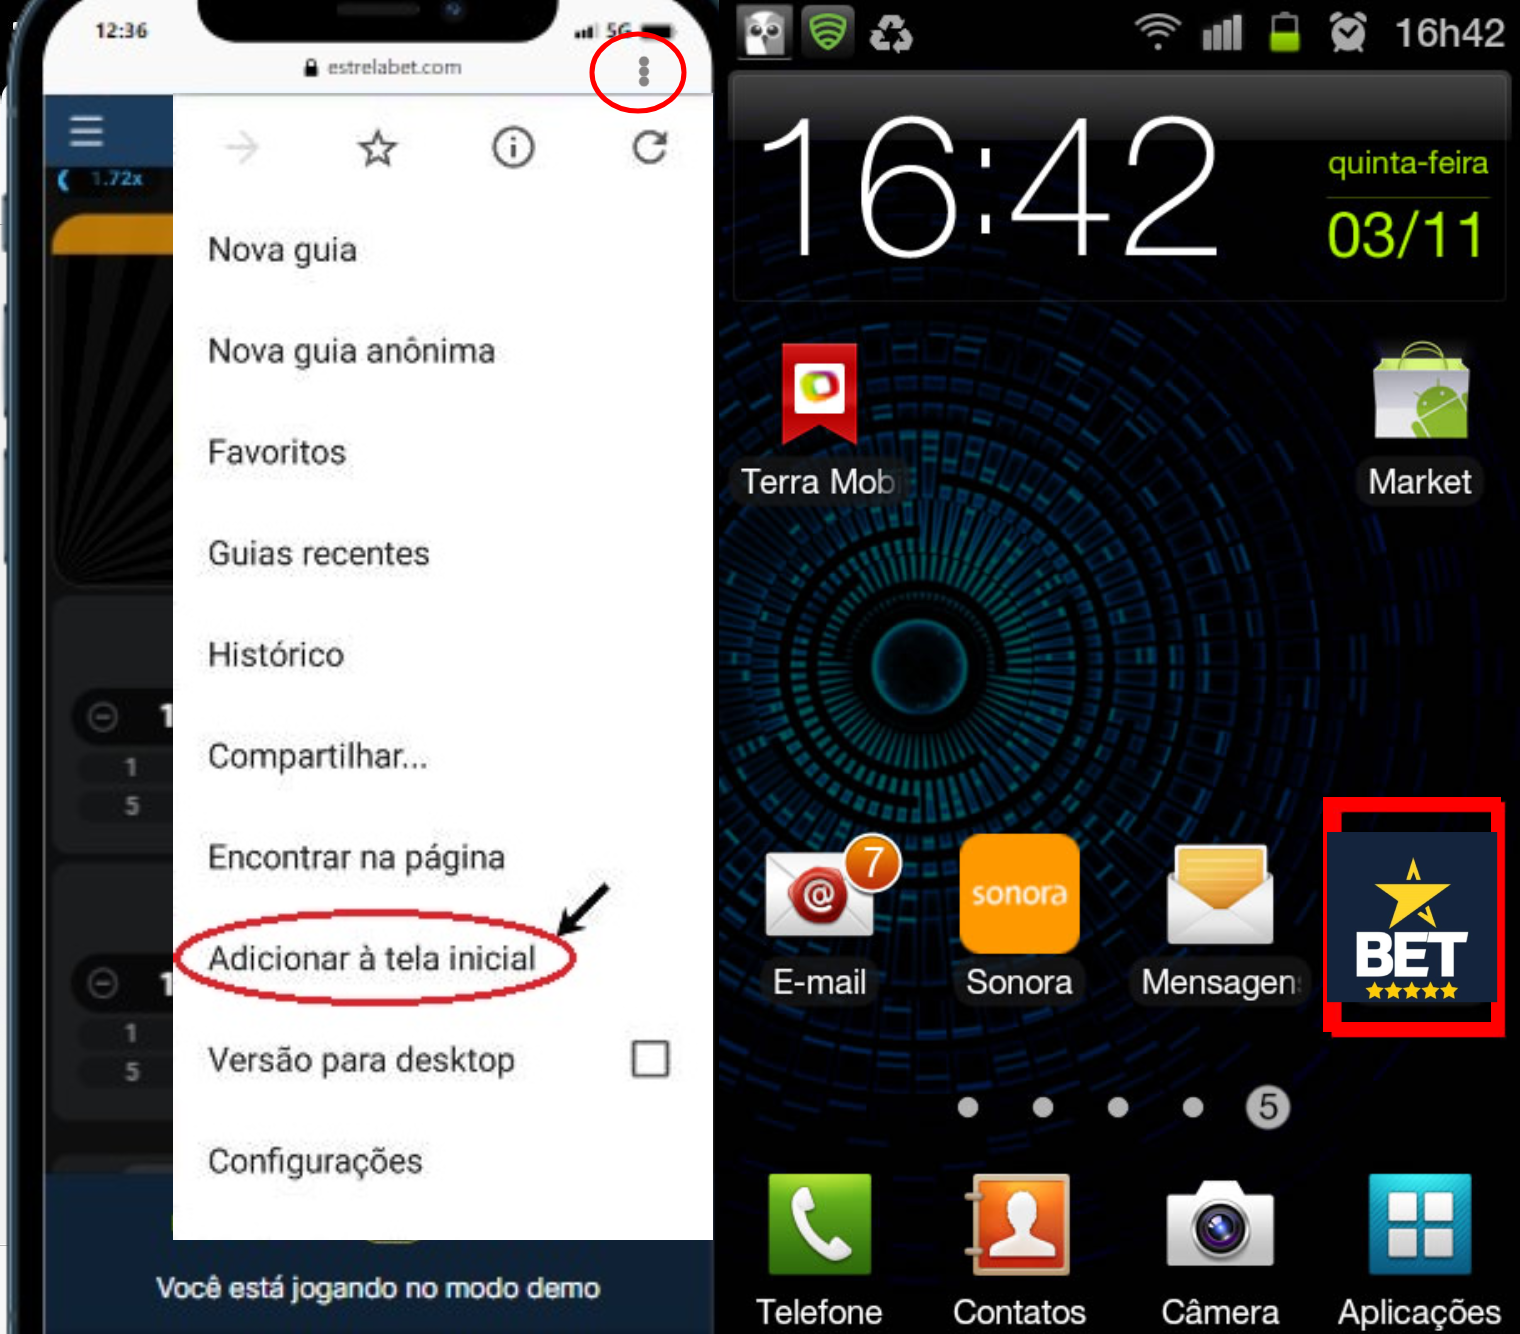 Duas capturas de tela do Android mostram etapas de como adicionar o cassino Estrela Bet a uma página inicial